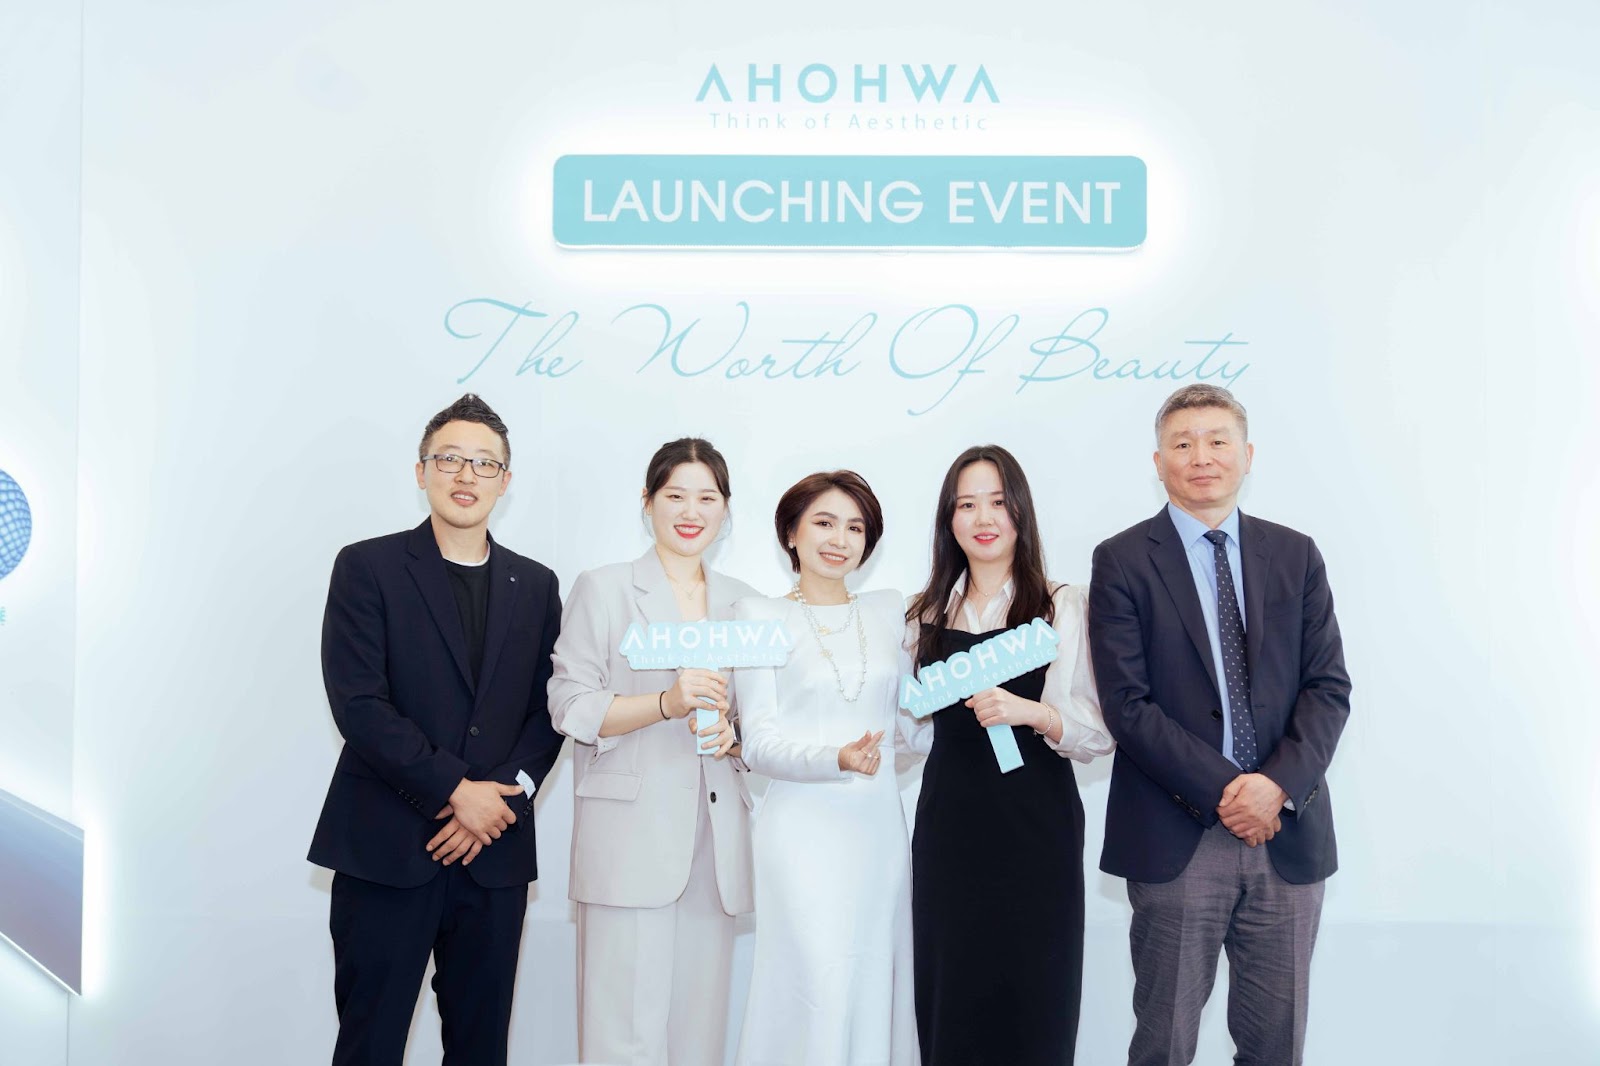 &quot;Vẻ đẹp xứng tầm&quot; - sự kiện khẳng định vị thế của thương hiệu Ahohwa trên thị trường mỹ phẩm thẩm mỹ Việt Nam - Ảnh 1.